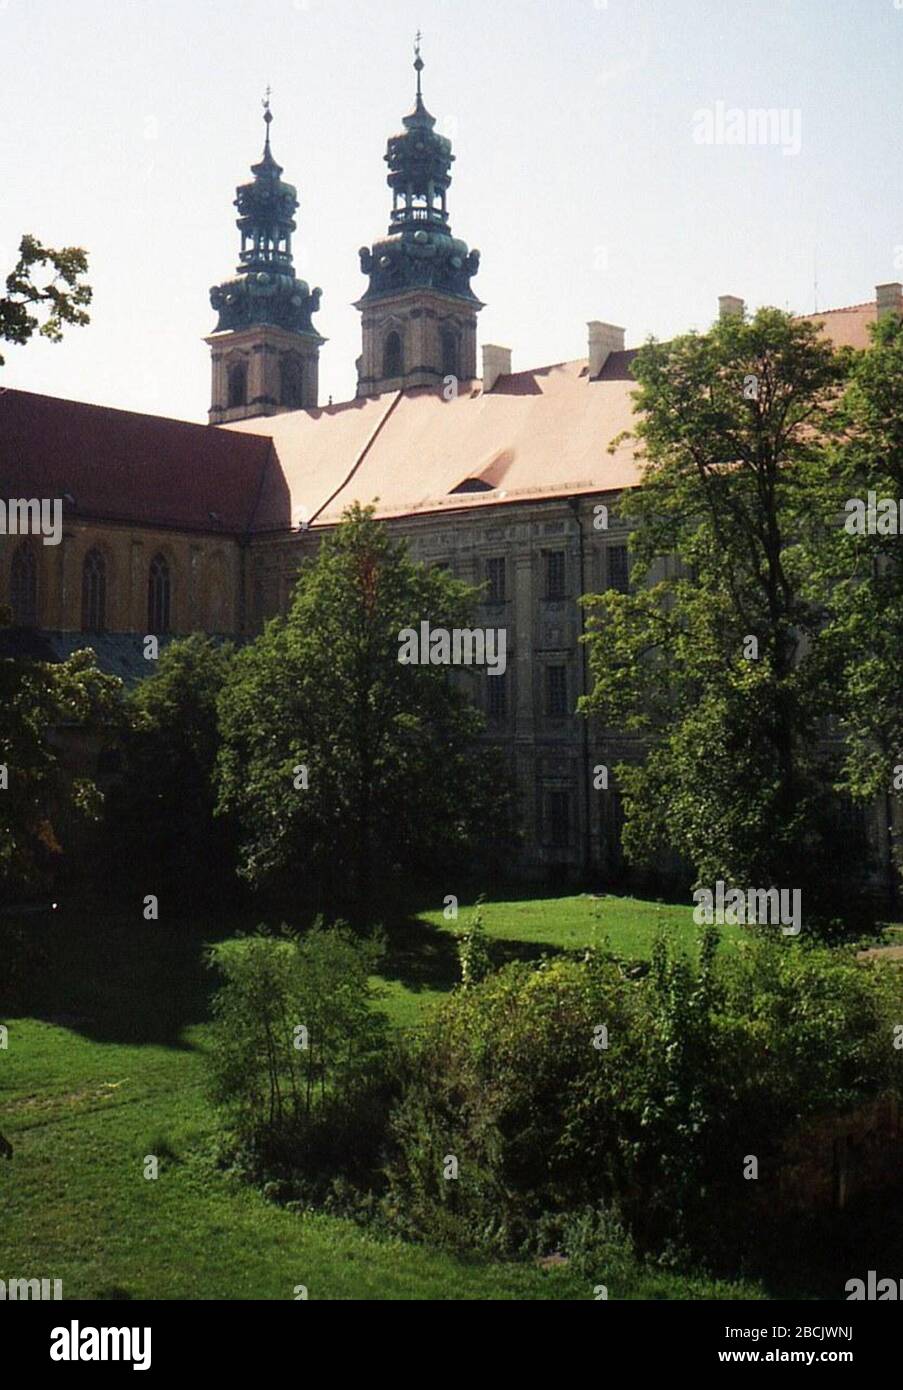 'Polski: Klasztor w Lubiążu - ujęcie nie od frontu... Zdjęcie wykonane analogowym aparatem automatycznym.; between 1999 and 2003; Fotopolska.eu; Julo; ' Stock Photo